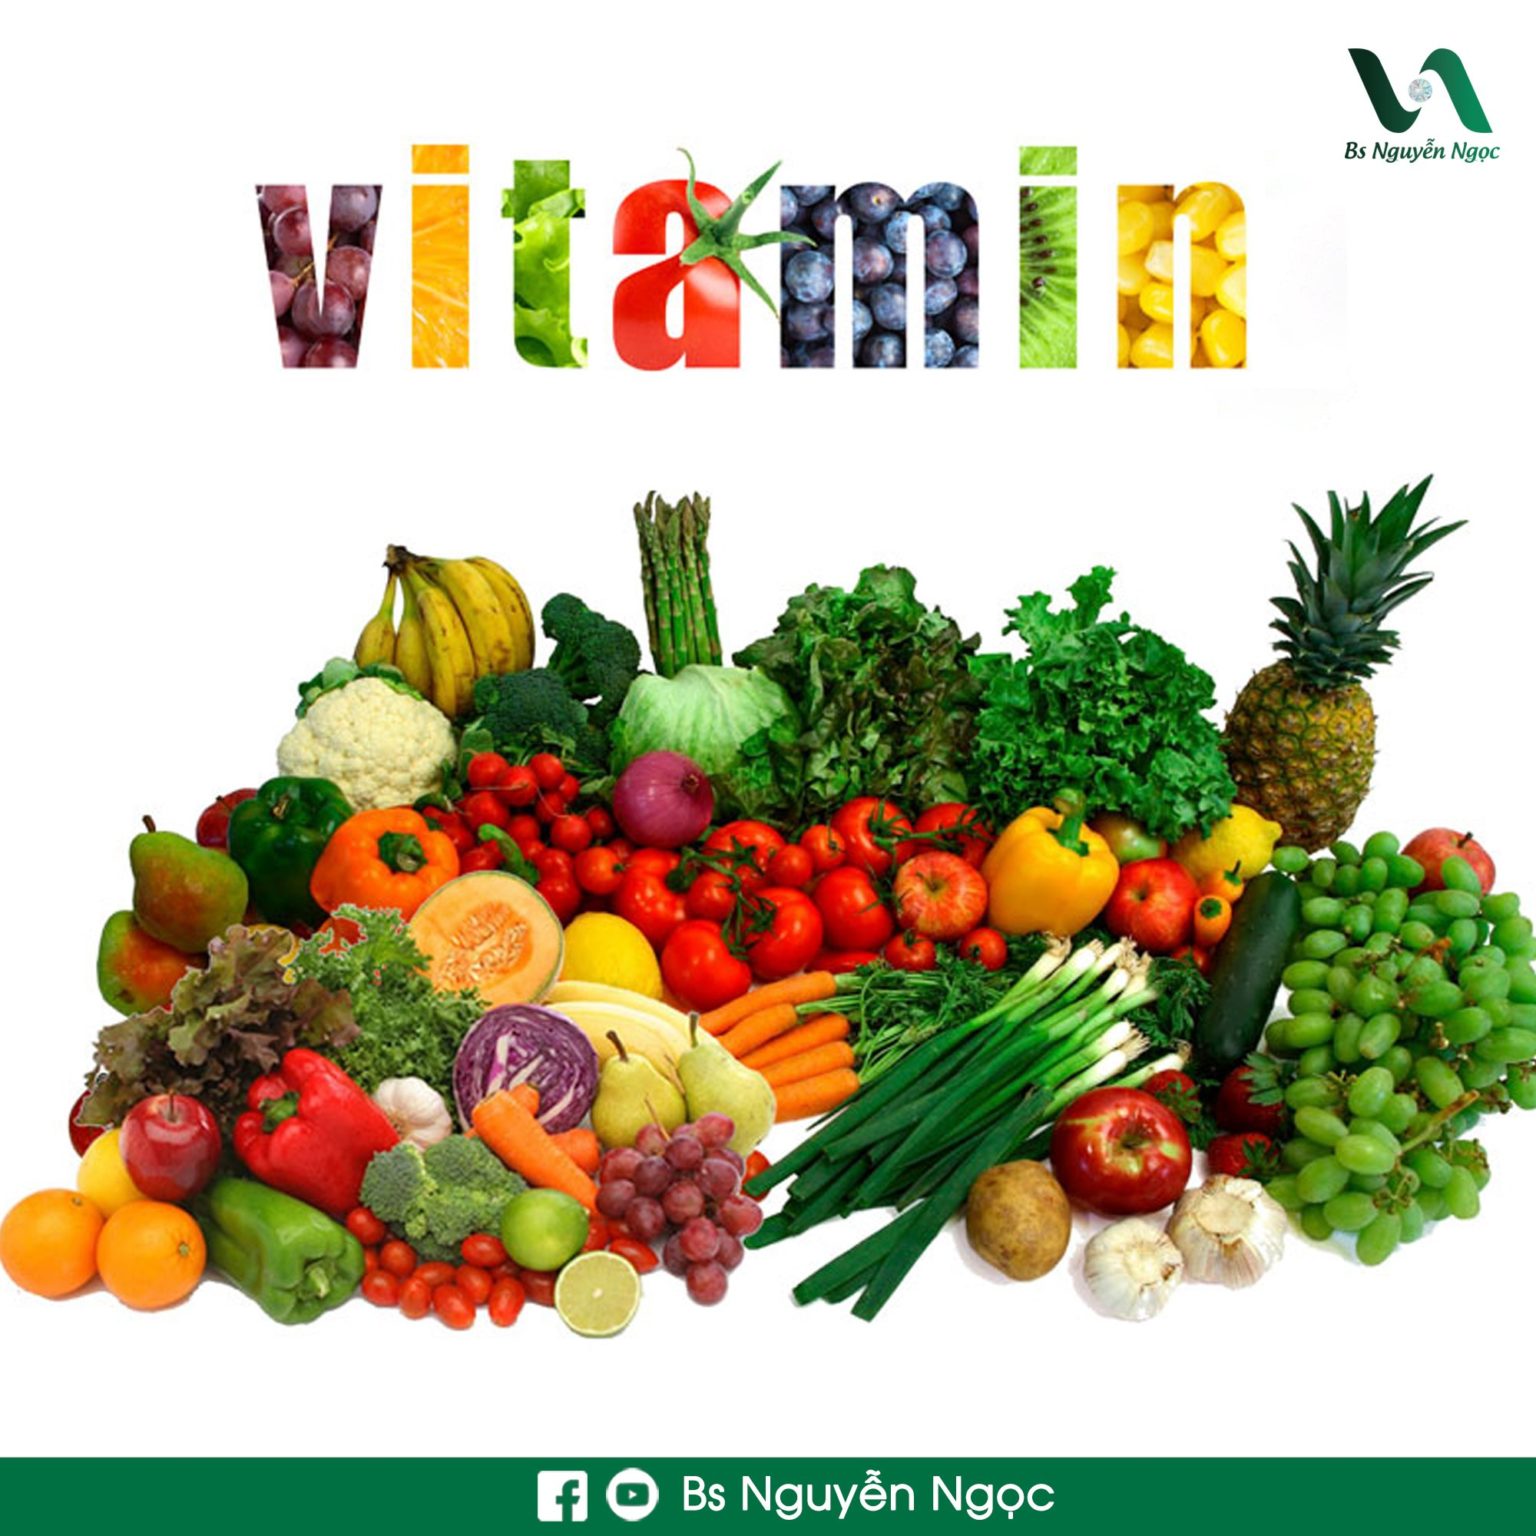 2. Bổ sung vitamin tự nhiên - Thói quen giúp da đẹp